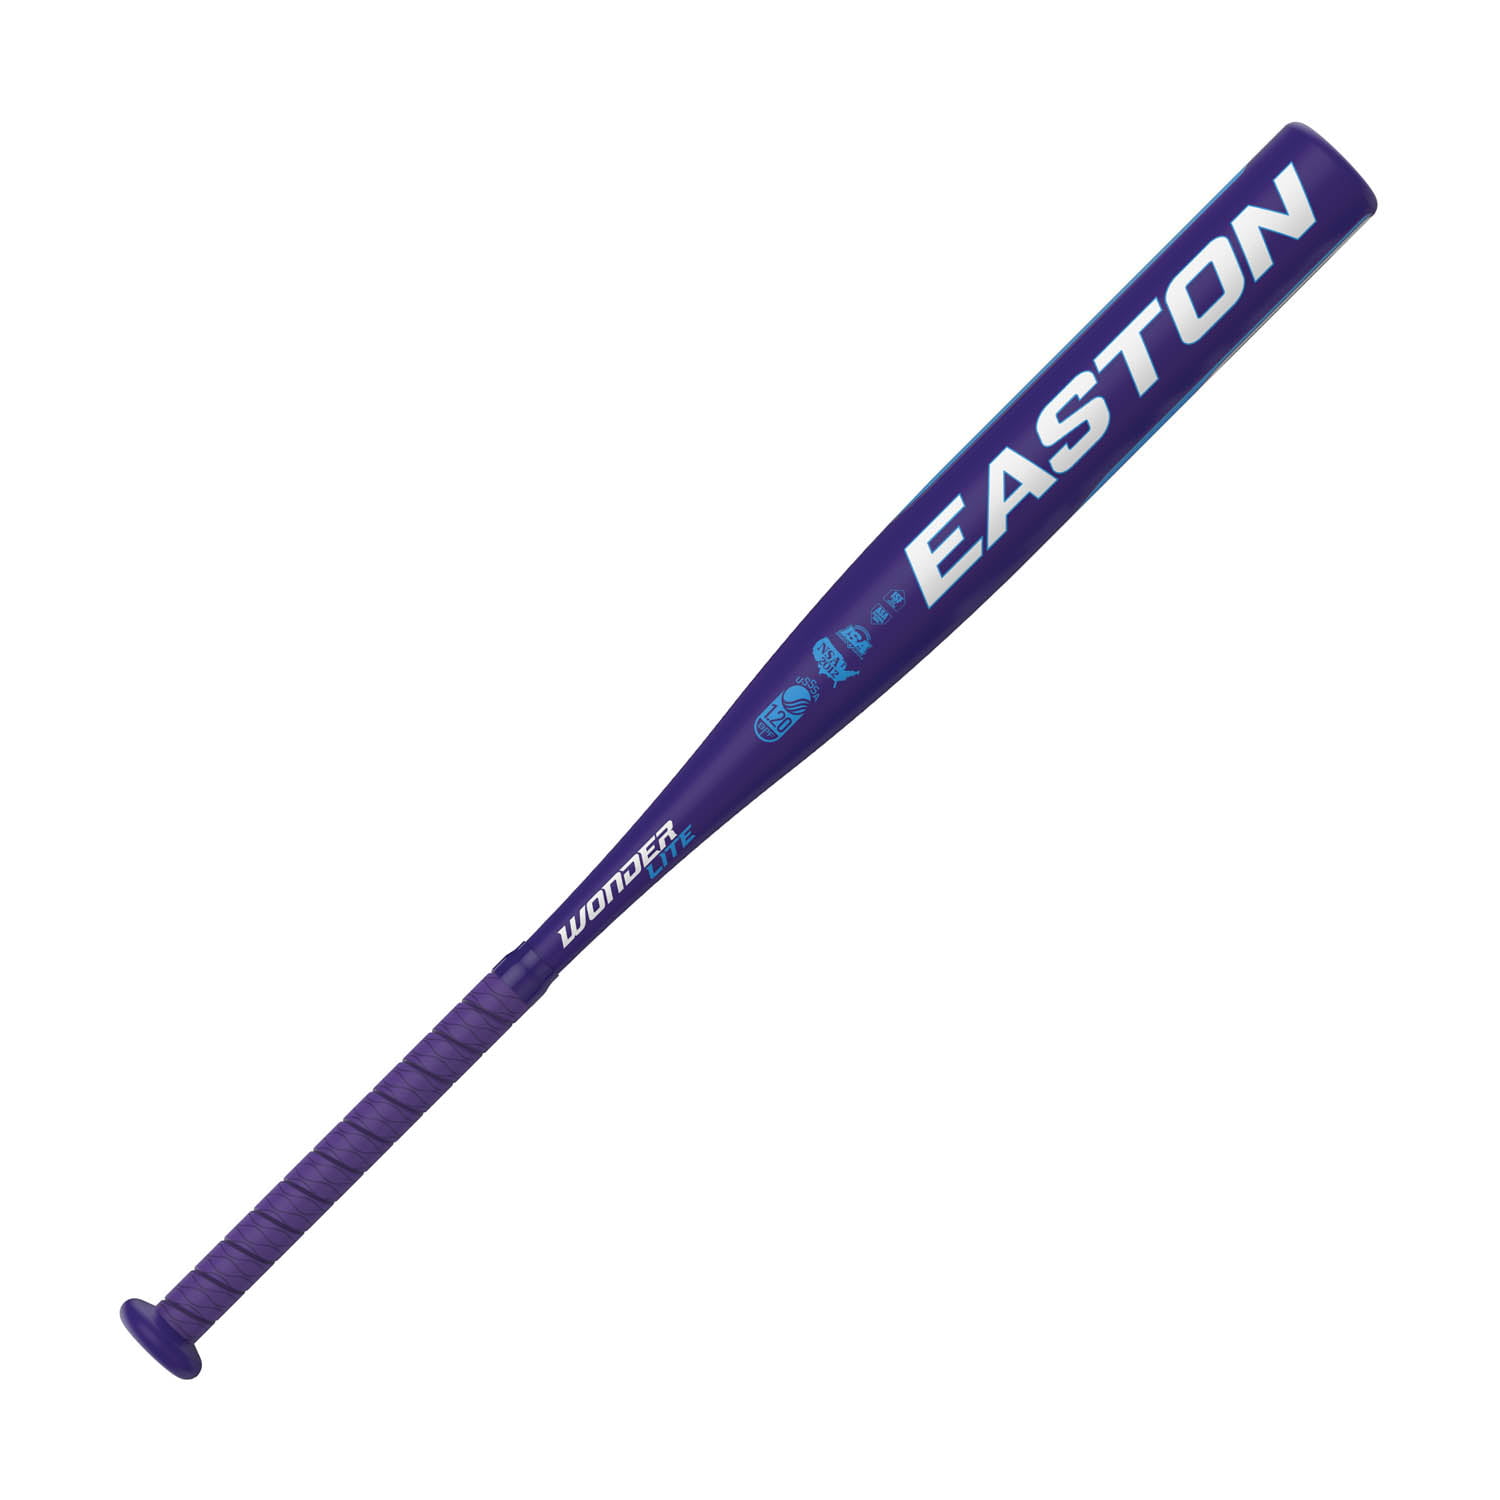 Easton Youth Girls Aluminum 30" Softball Bat Model SK25 USSSA 20oz 2.25 Dia for sale online 